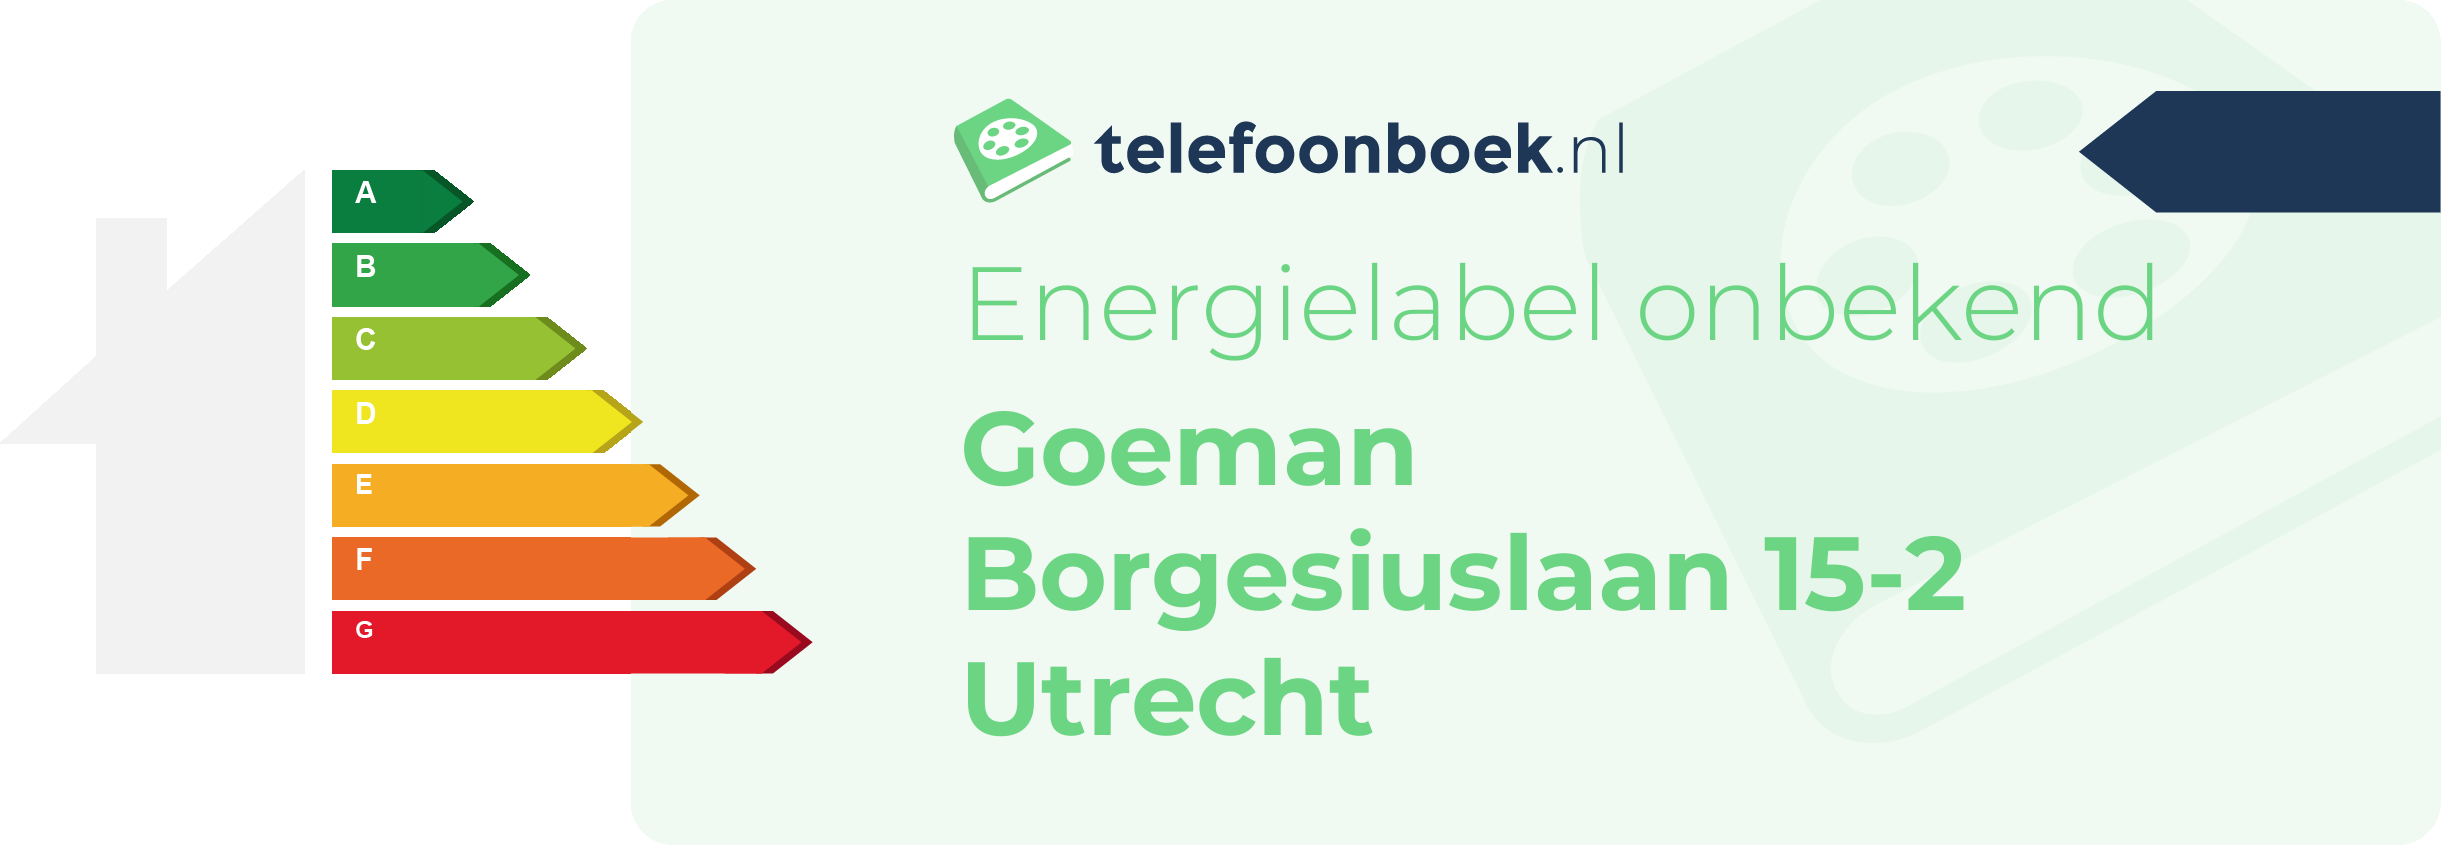 Energielabel Goeman Borgesiuslaan 15-2 Utrecht